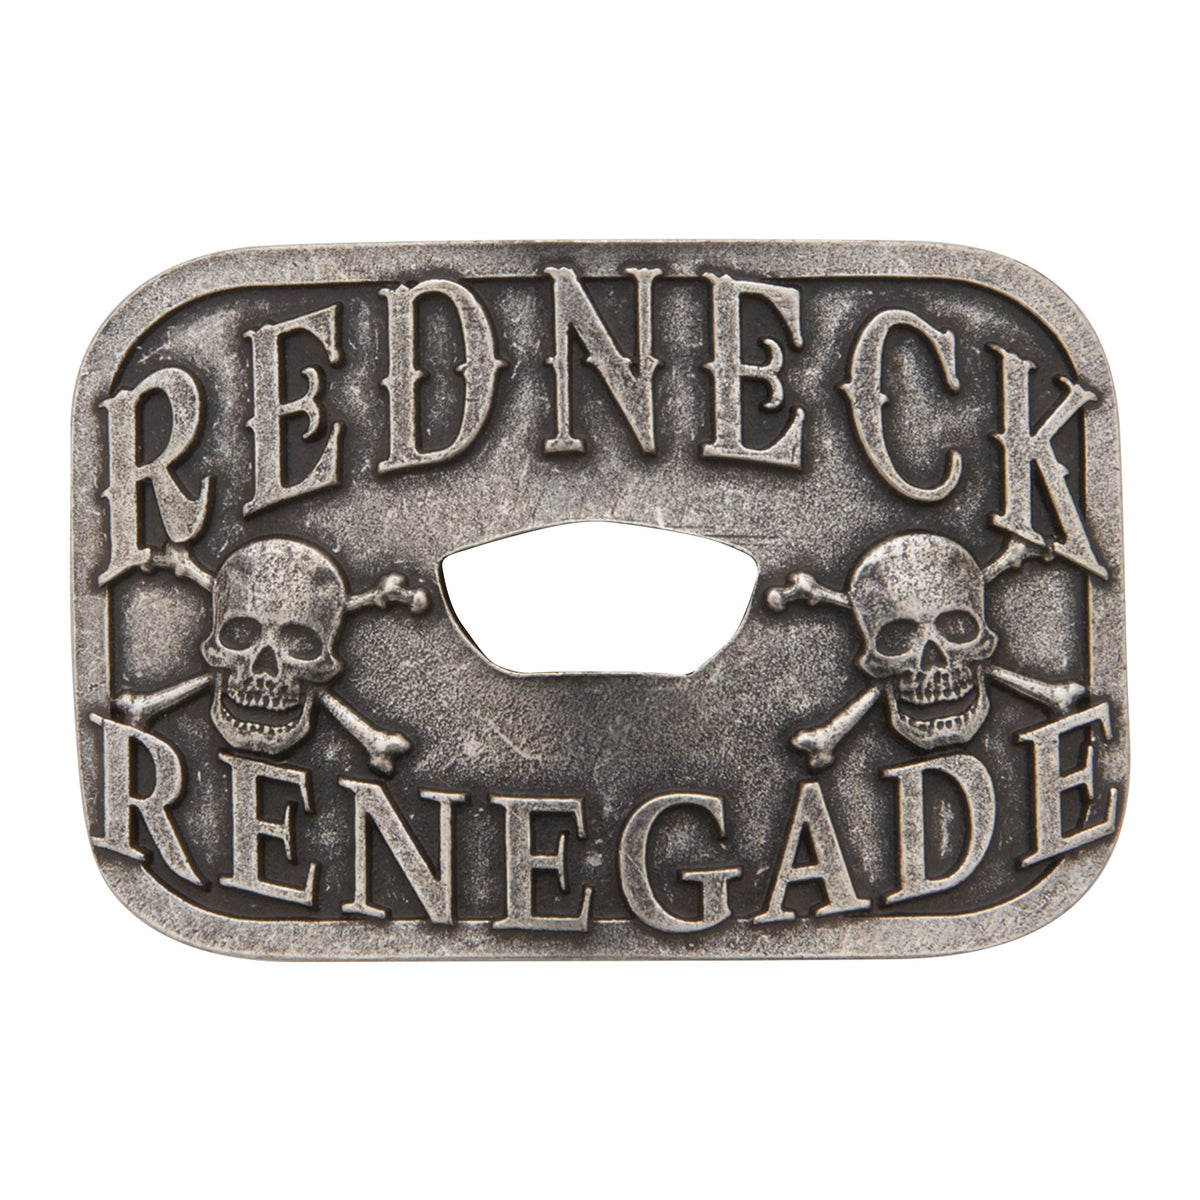 Redneck Renegade with Bottle Opener Buckle